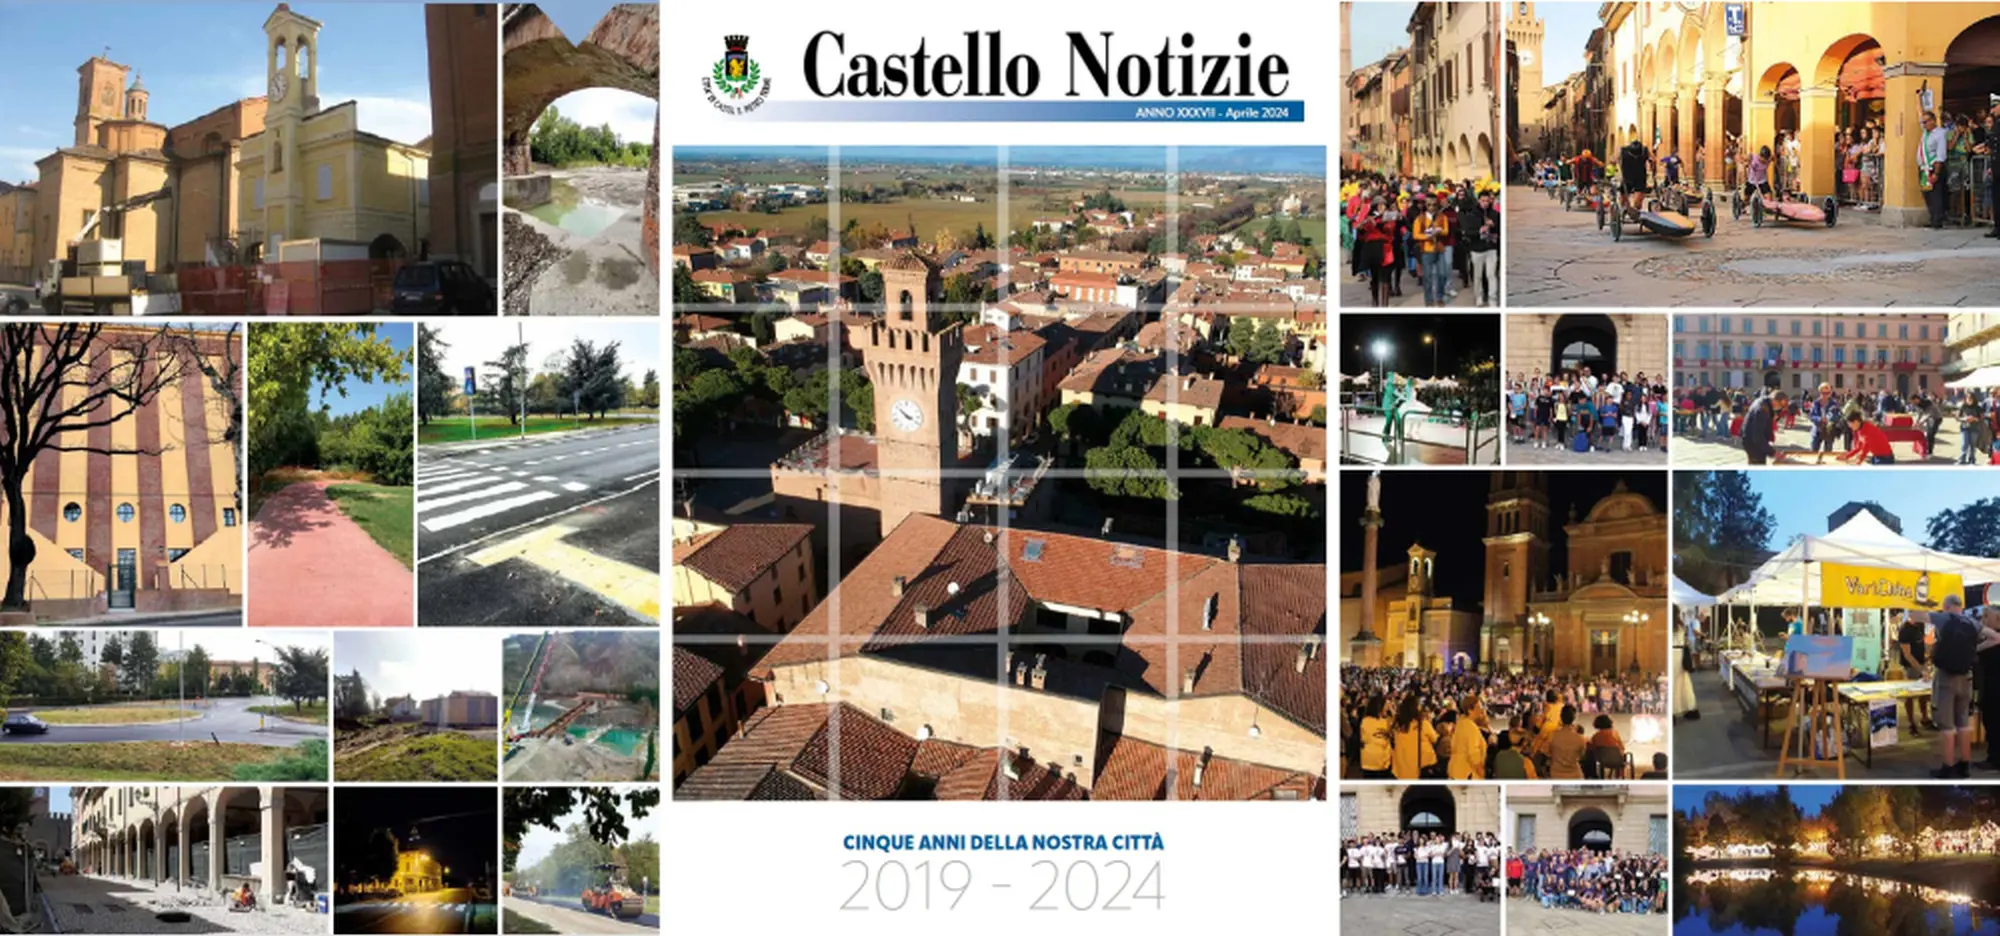 È uscito il numero speciale di Castello Notizie “Cinque anni della nostra città 2019-2024